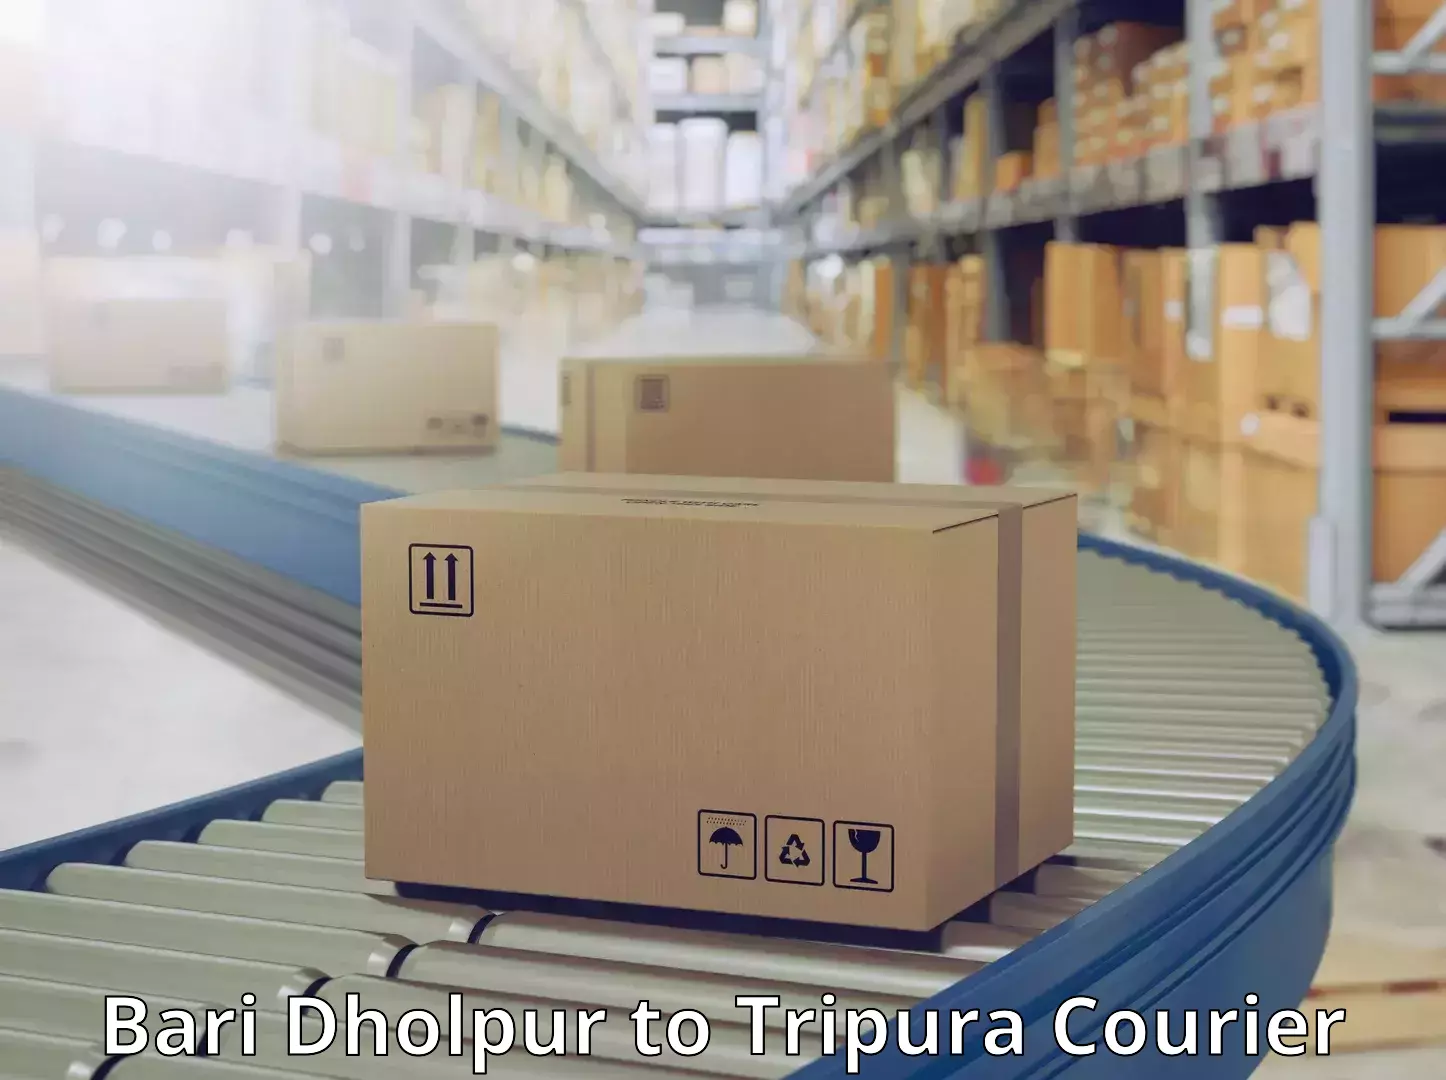 Efficient parcel delivery Bari Dholpur to Amarpur